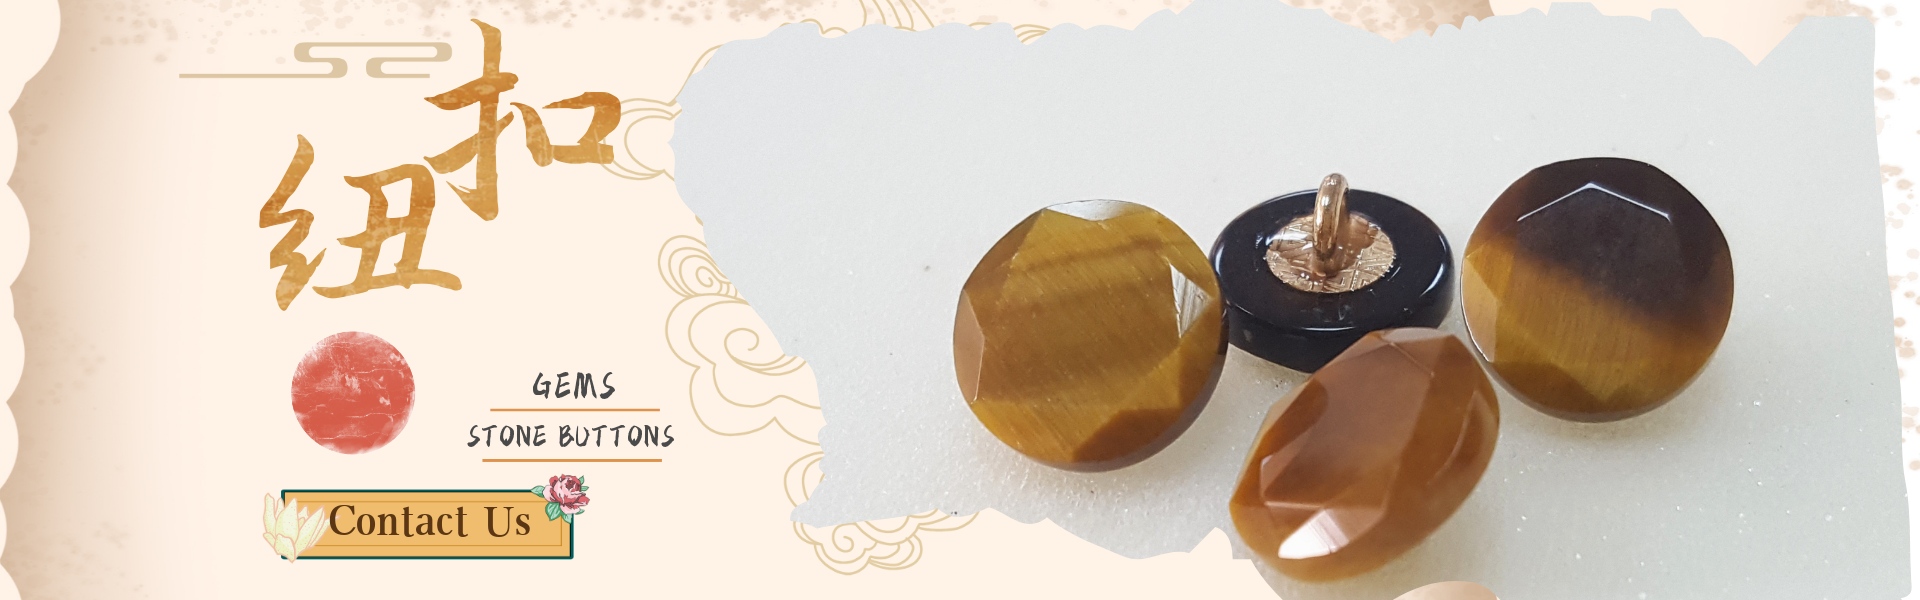 скъпоценни камъни,каменни копчета,нефрит,Dongguan ZIZO Arts and Crafts Co. LTD